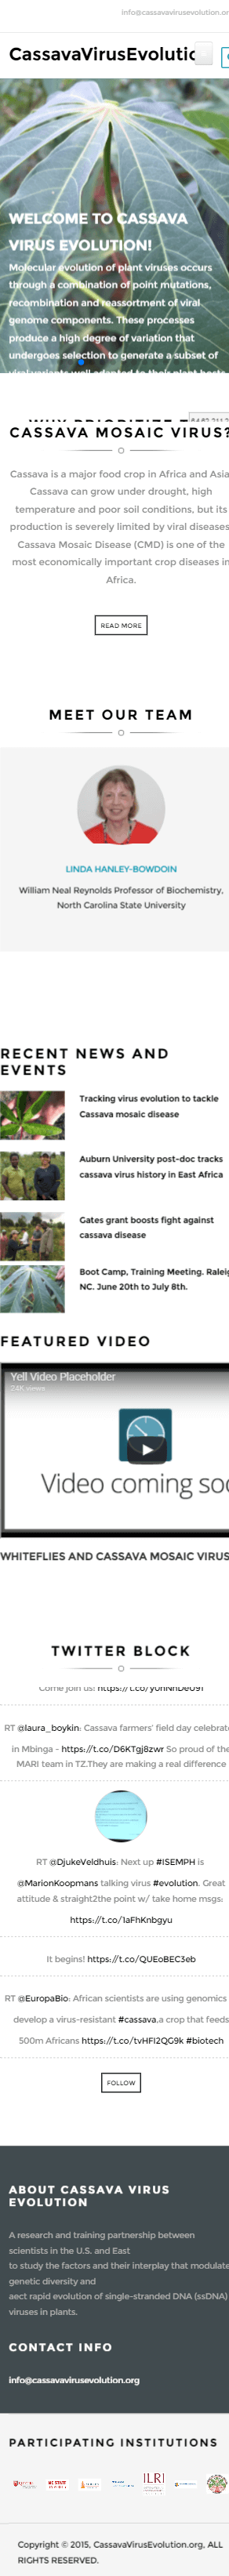 Cassava virus evolution mobile